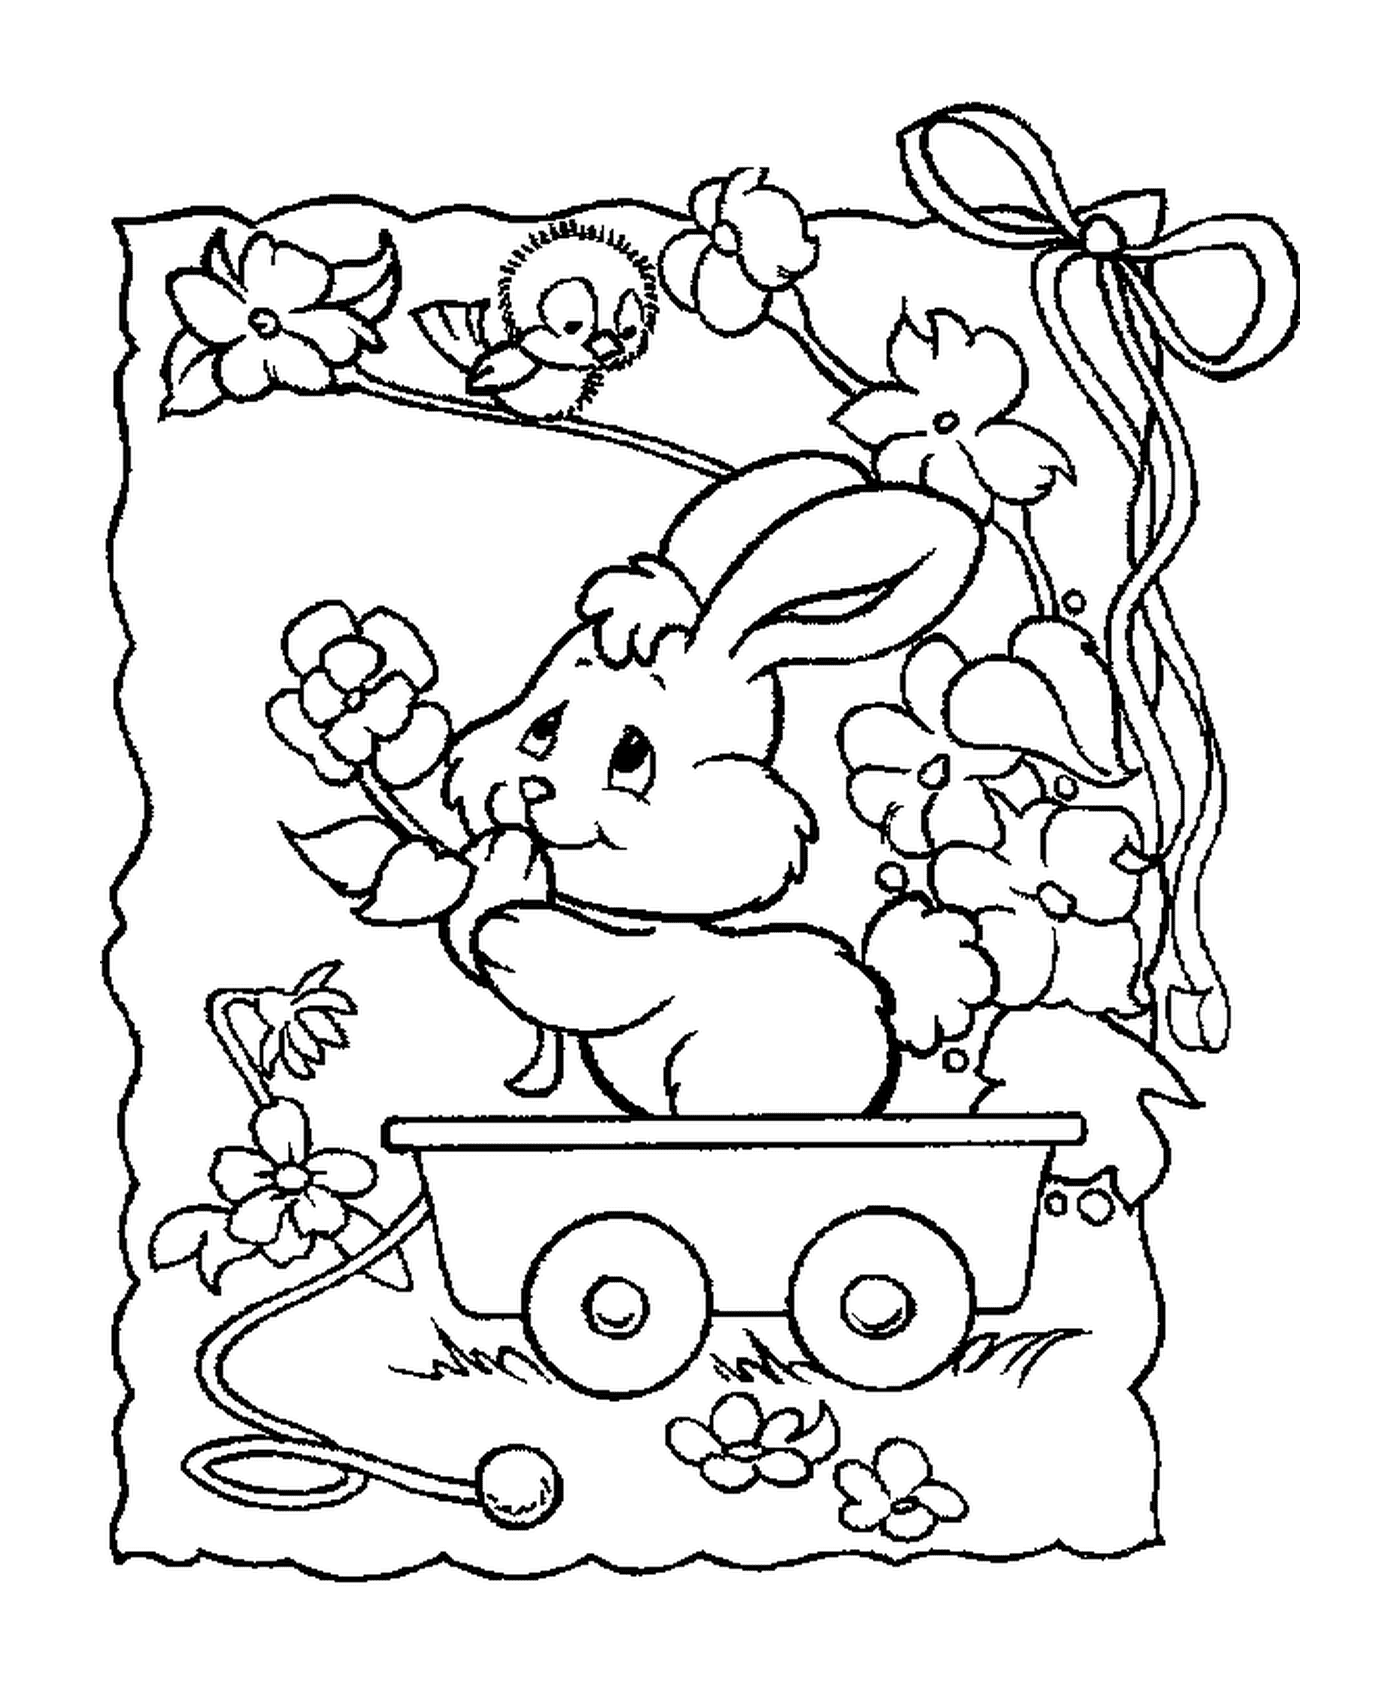  Кролик сидит в фургоне 